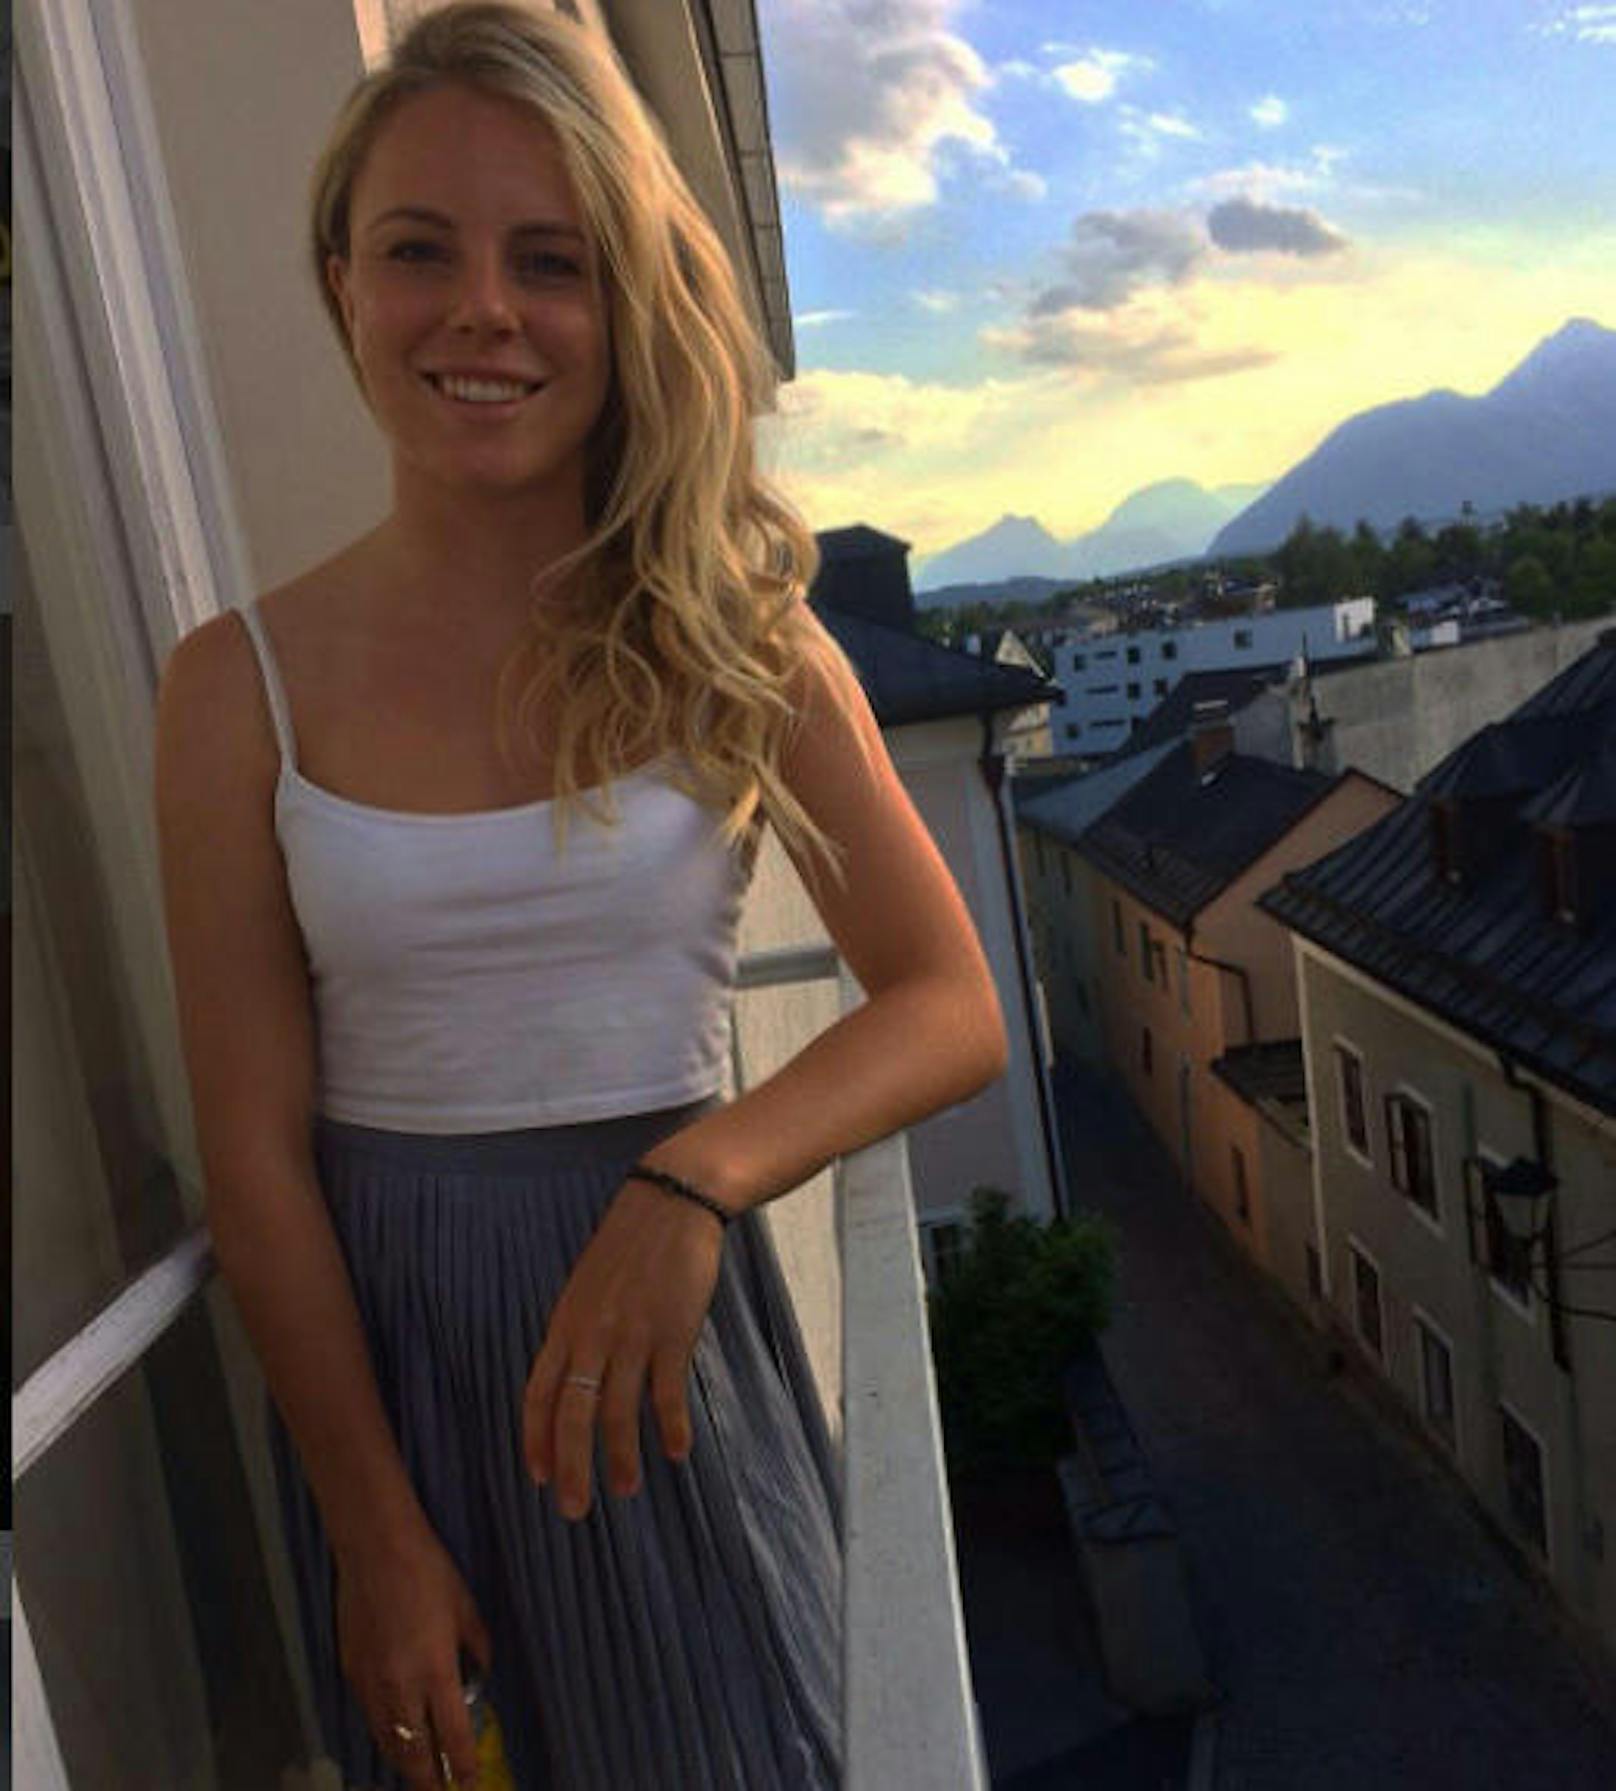 Die deutsche Freestylerin Lisa Zimmermann zeigt sich auf Instagram erotisch